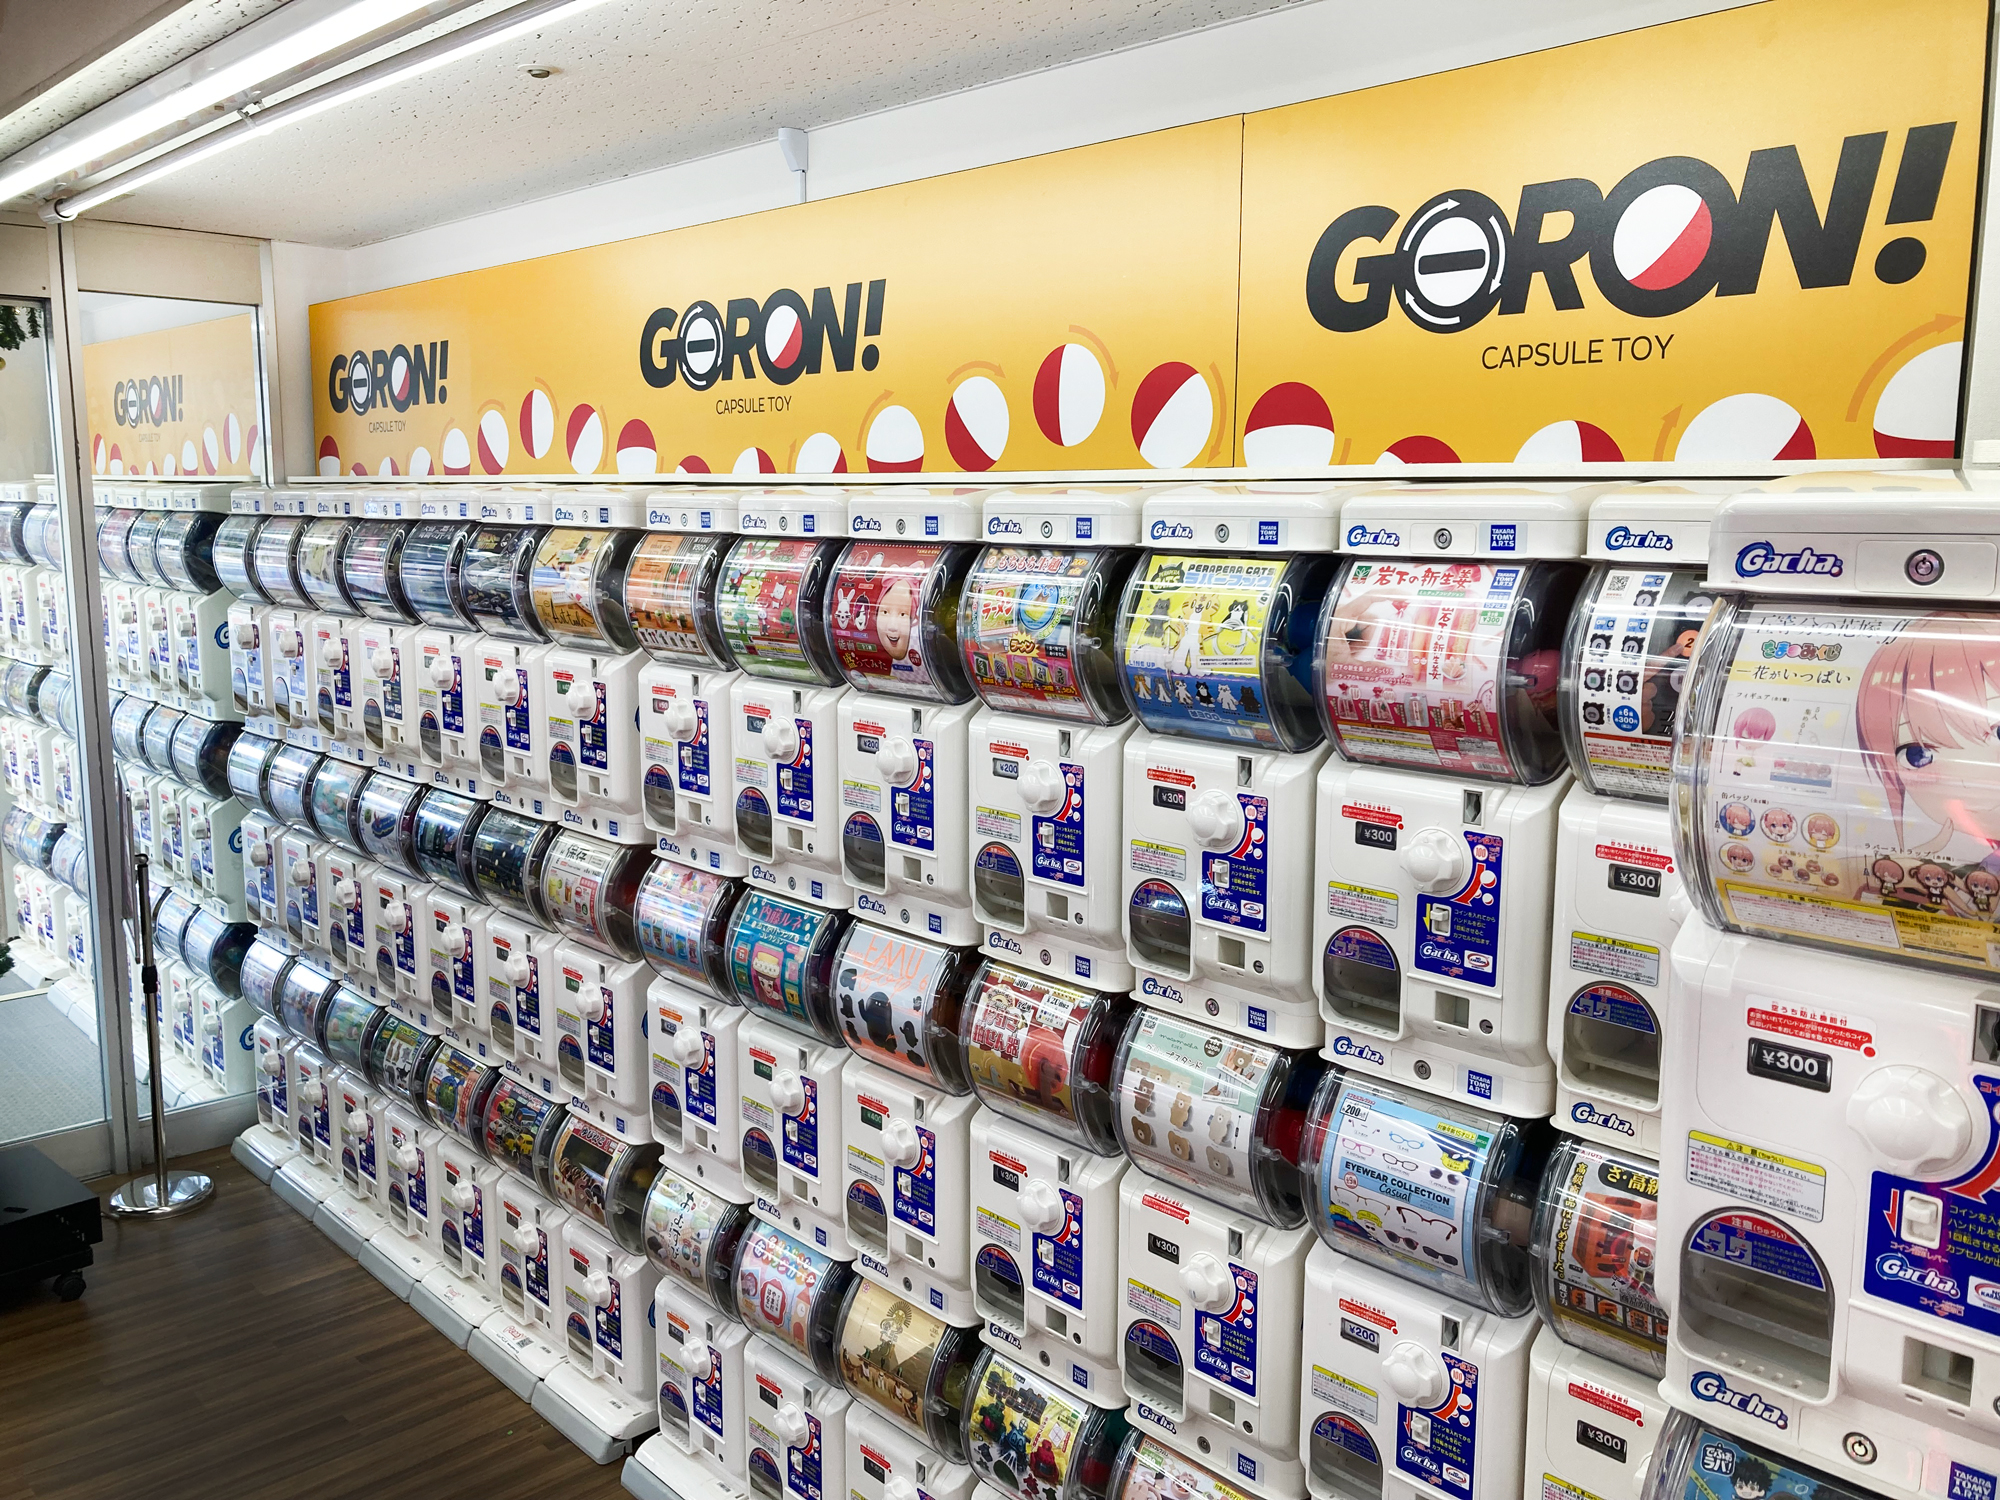 カプセルトイ専門店3号店が登場 Goron Goton 東京ドームシティ オープンのお知らせ 株式会社genda Gigo Entertainmentのプレスリリース